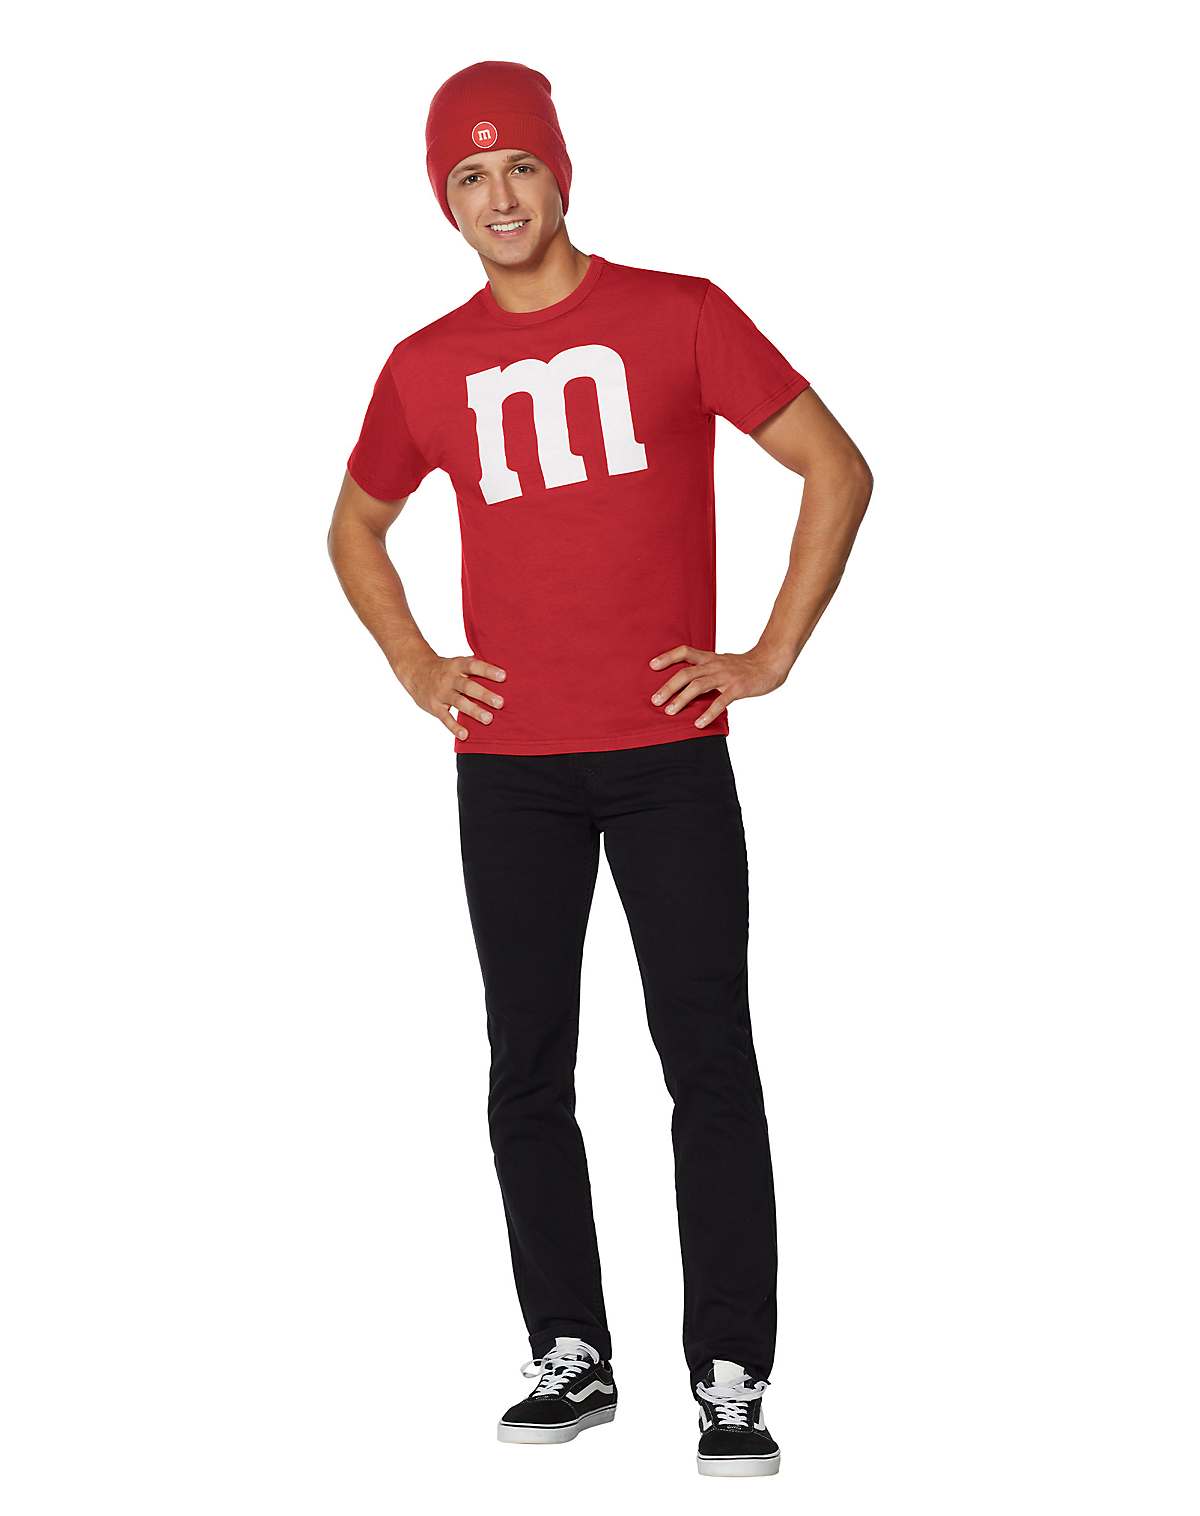 Red M&M Costume